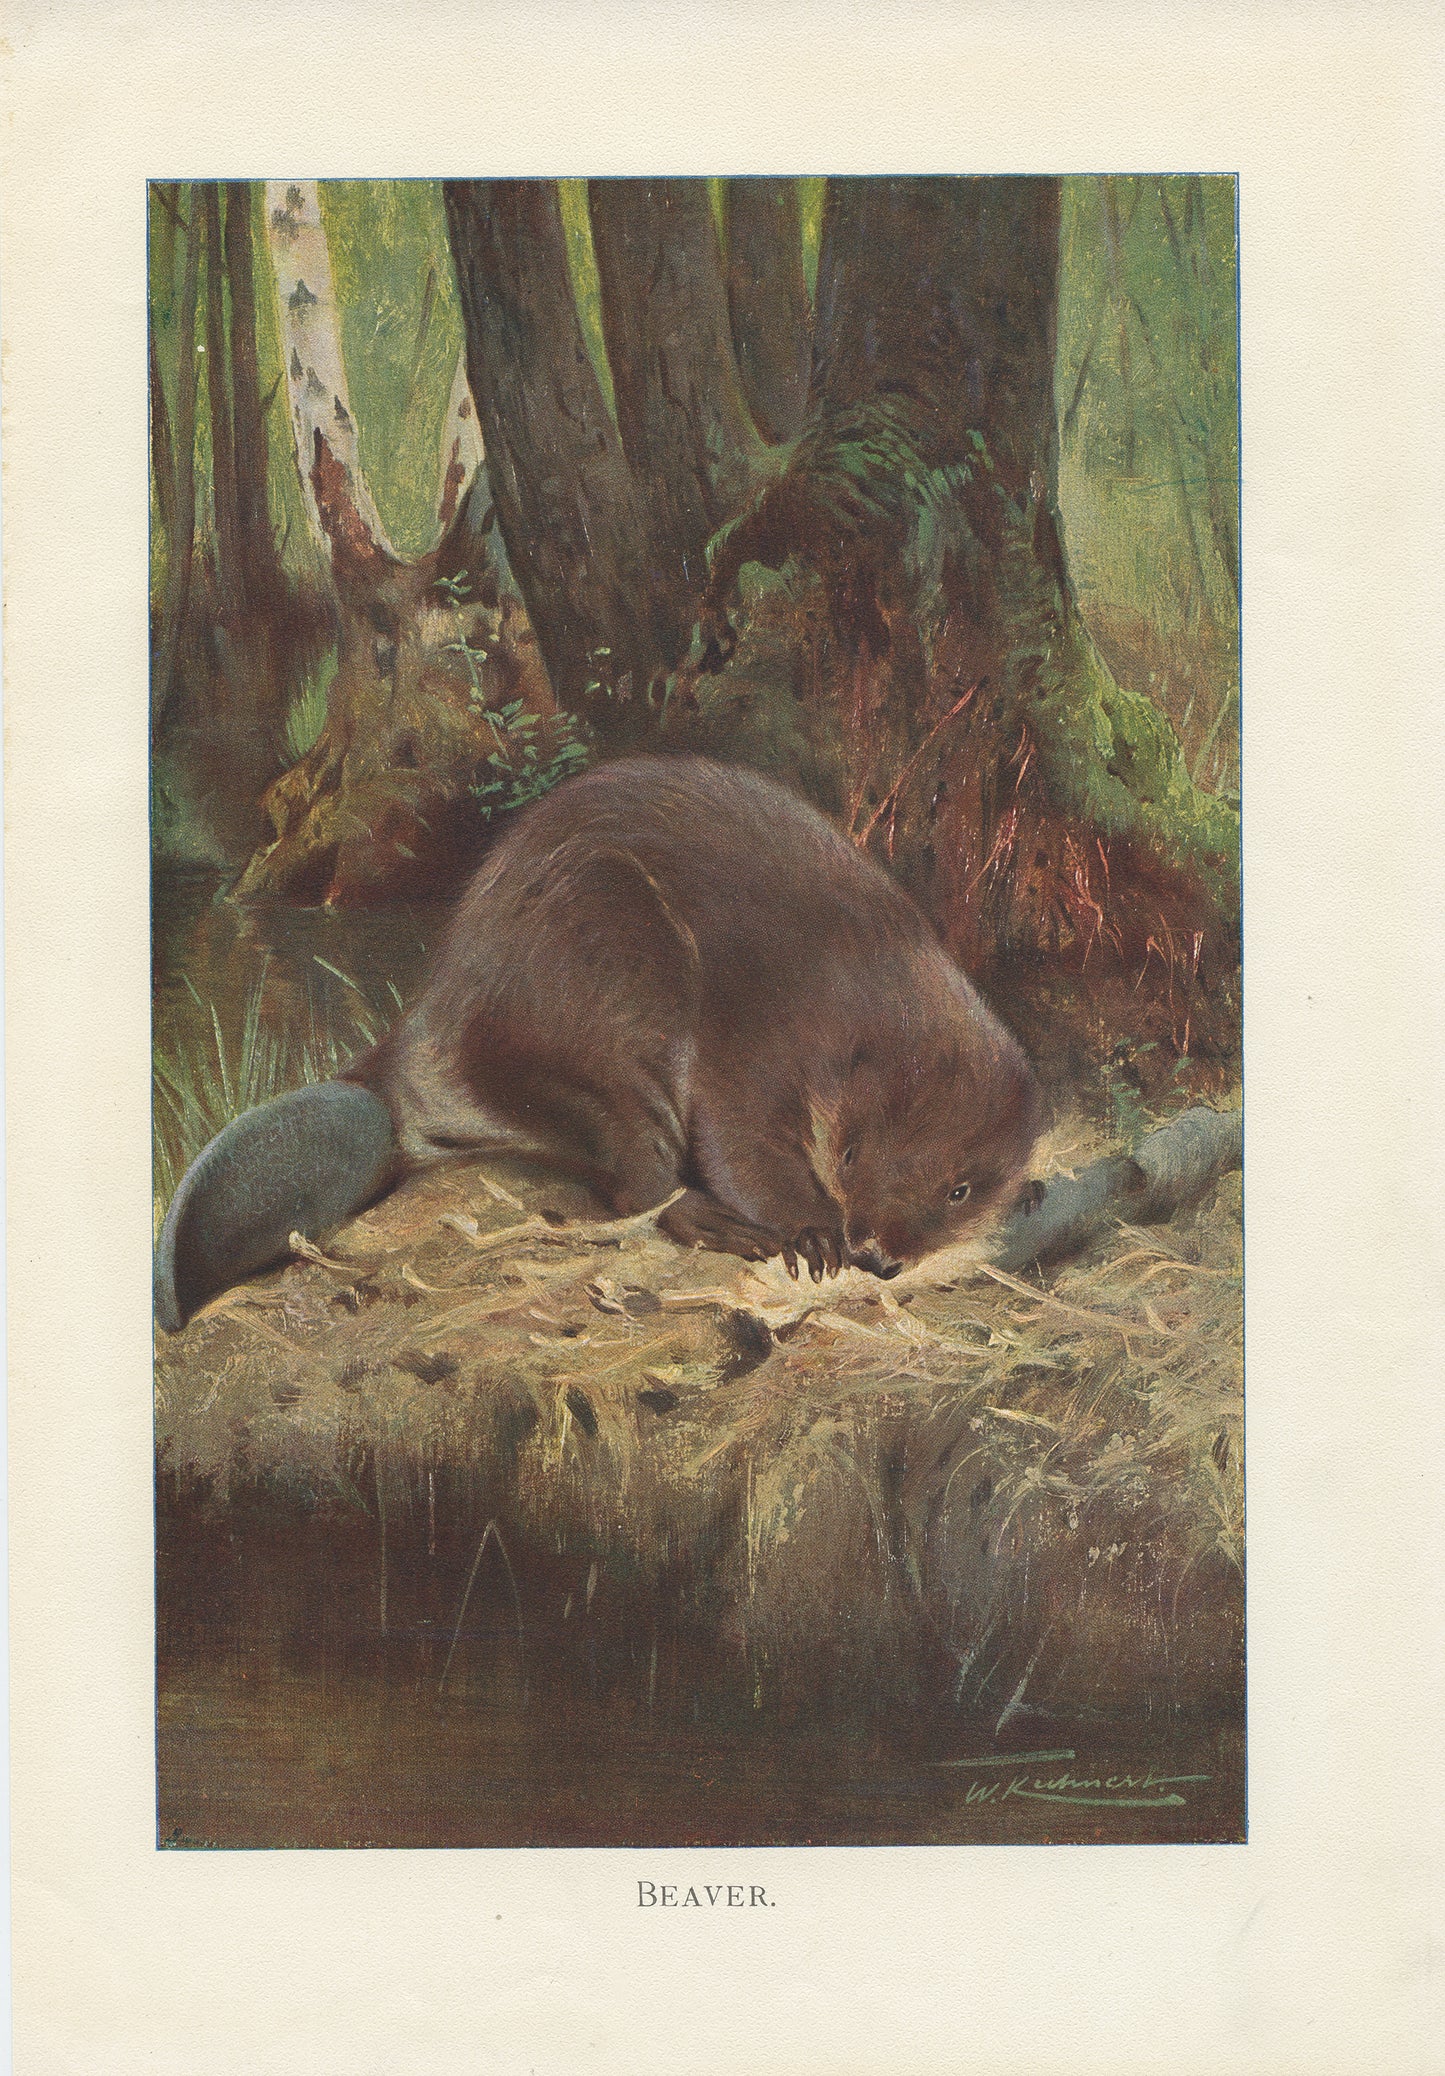 1916 Beaver Print - Lydekker